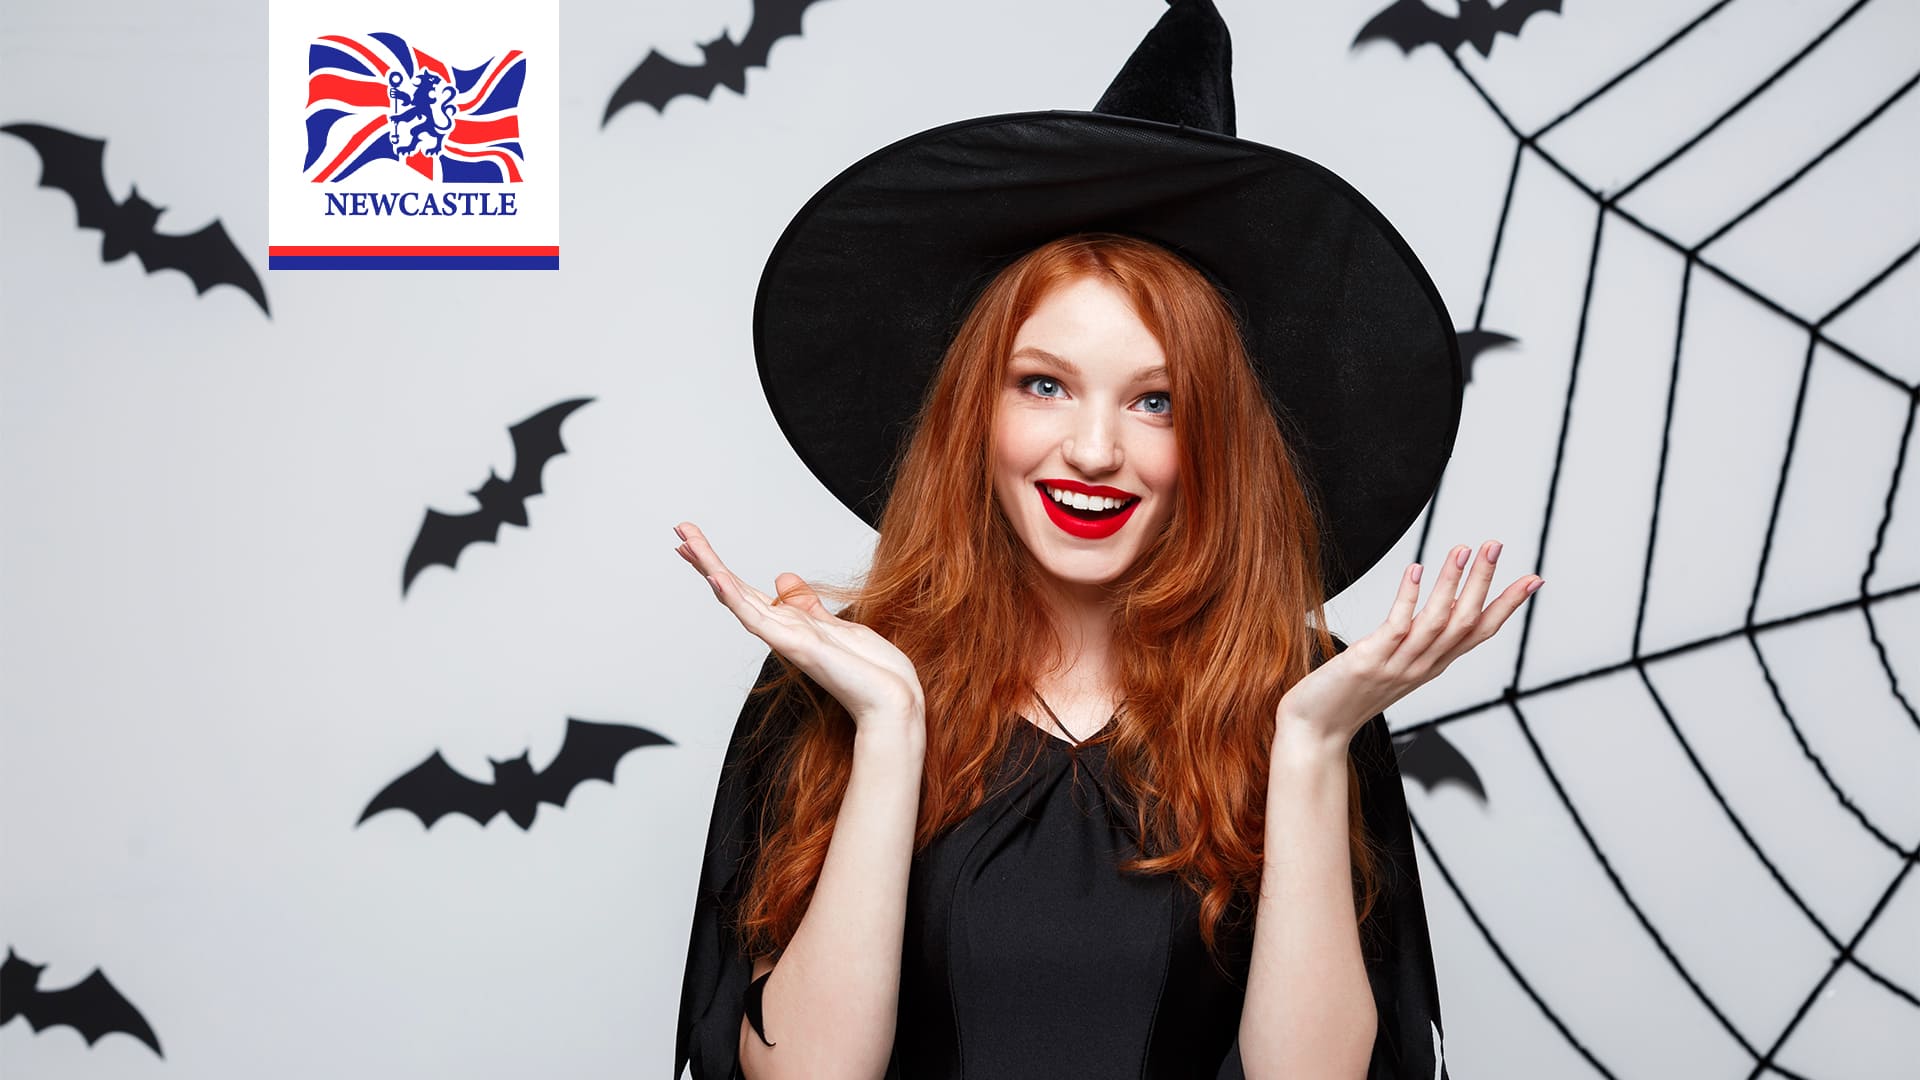 6 disfarces assustadores e horripilantes para fazer no Halloween